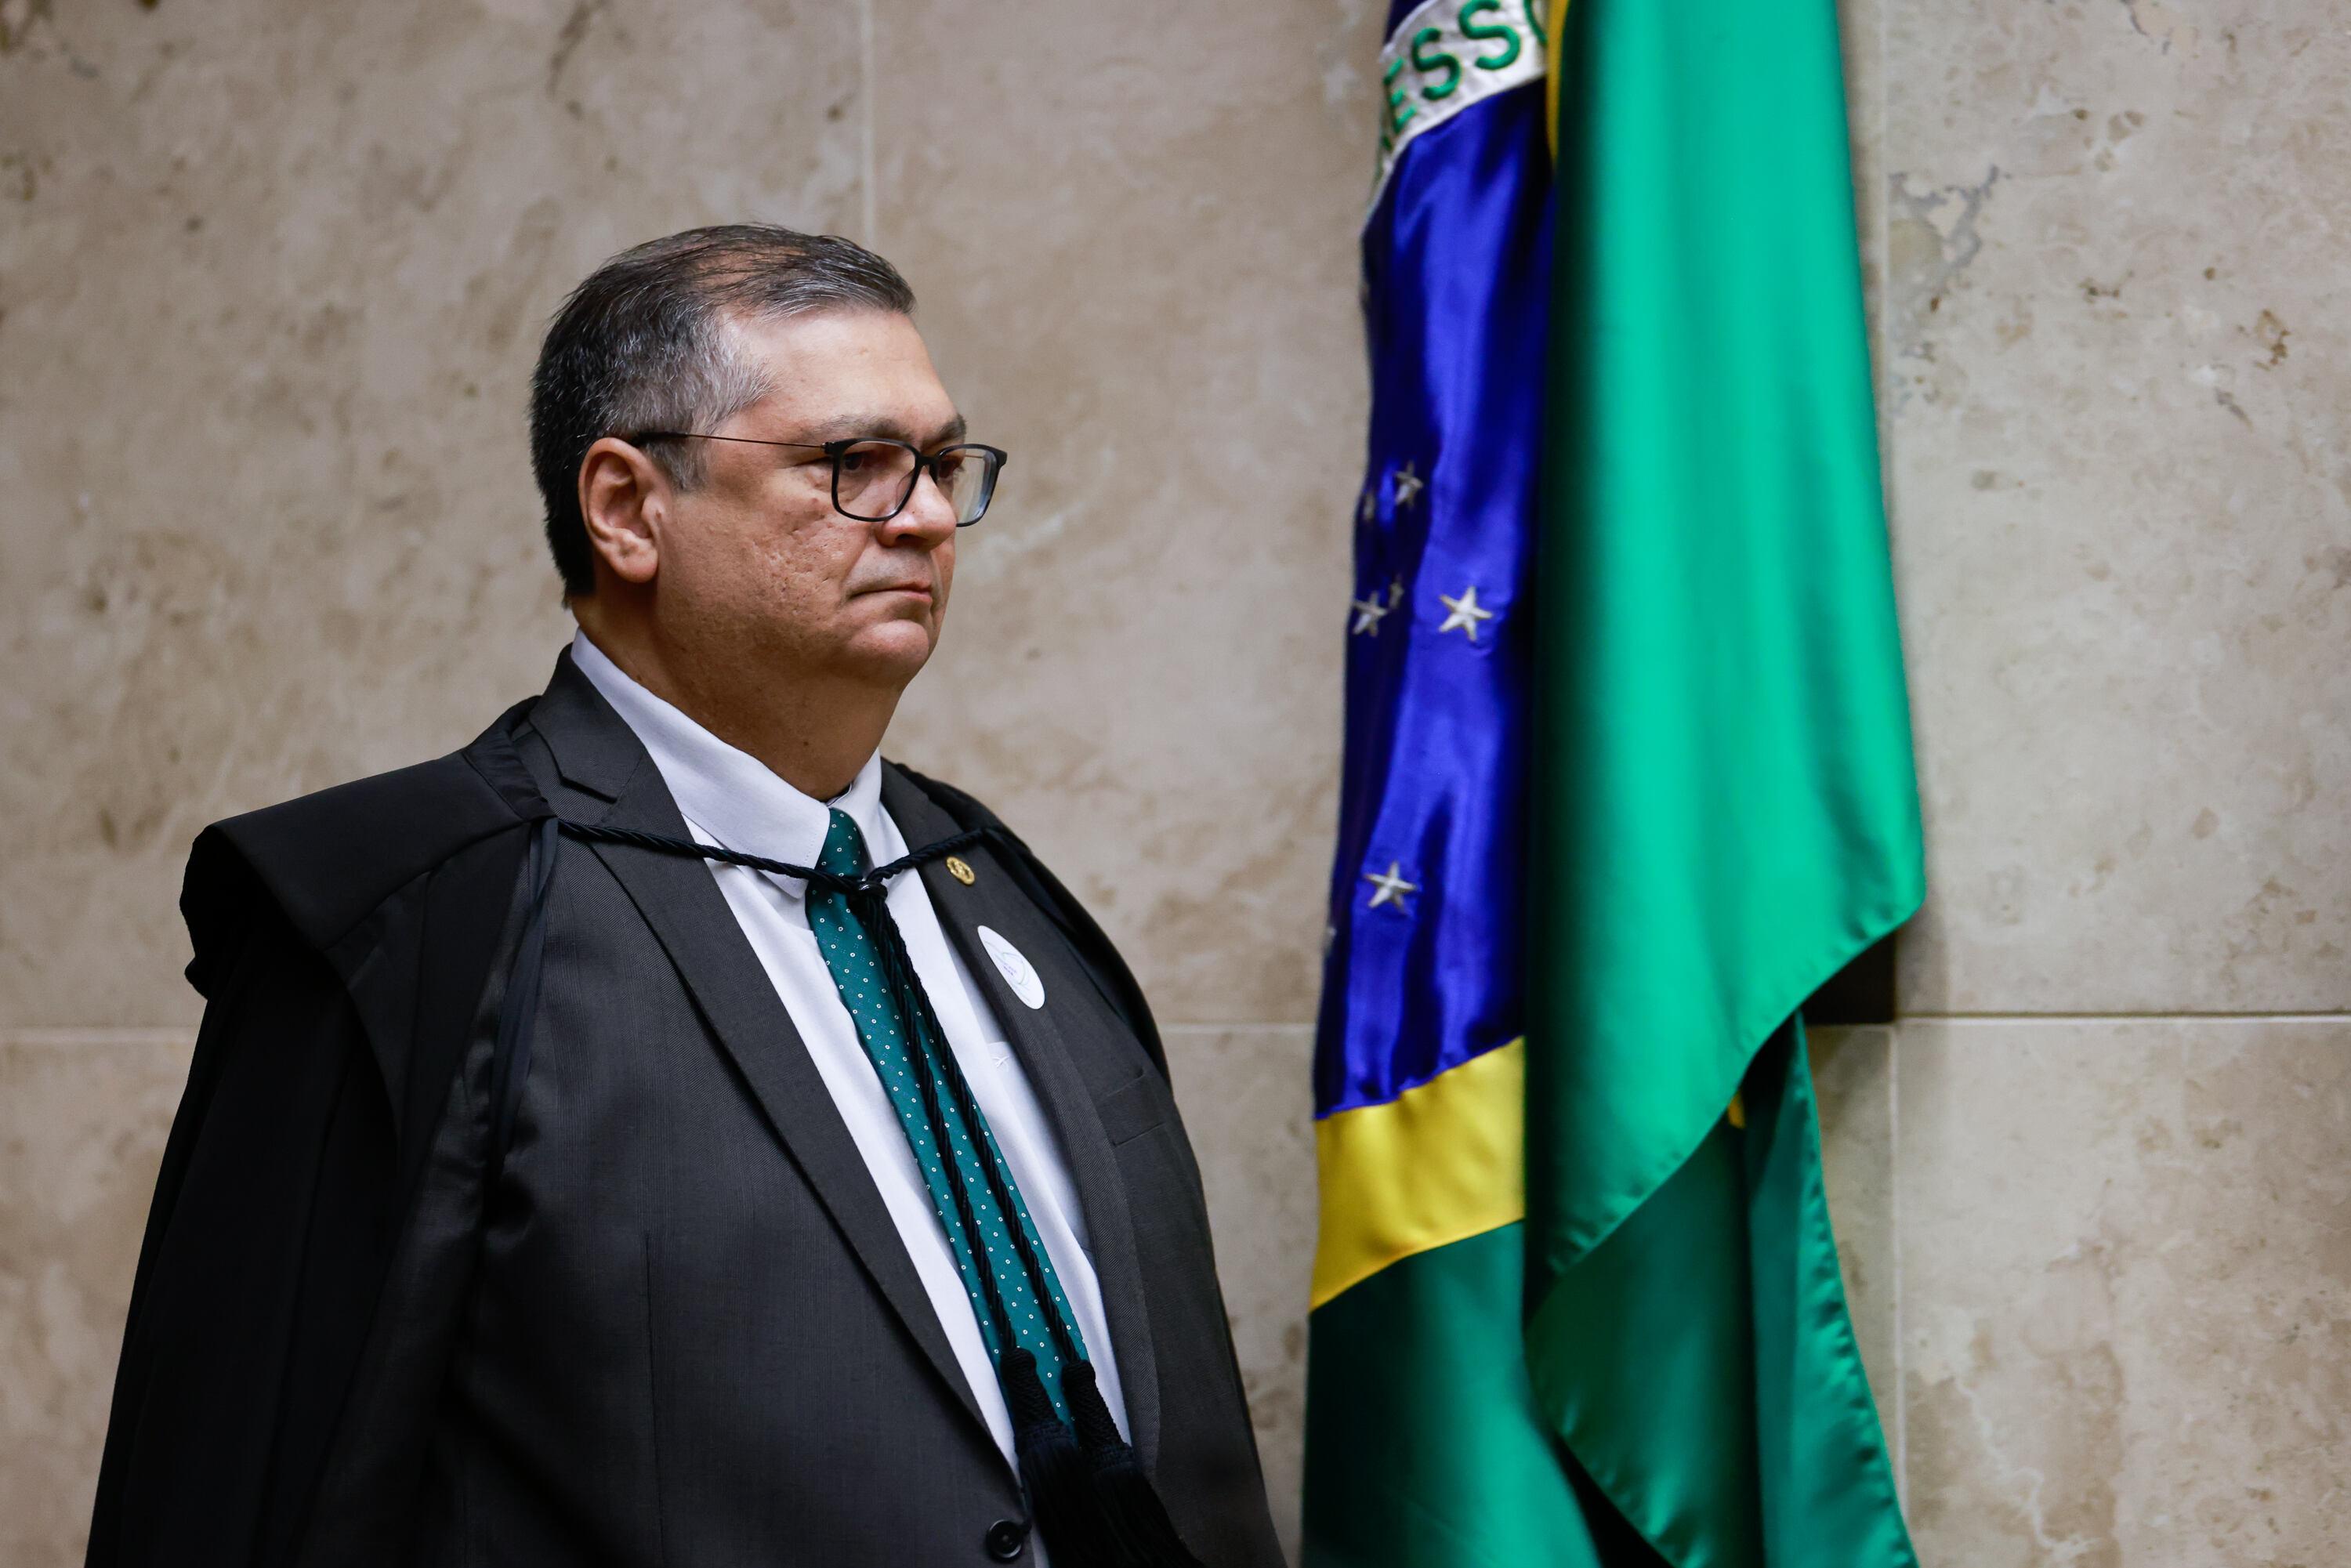 Foto do ministro Flávio Dino, do STF, de perfil